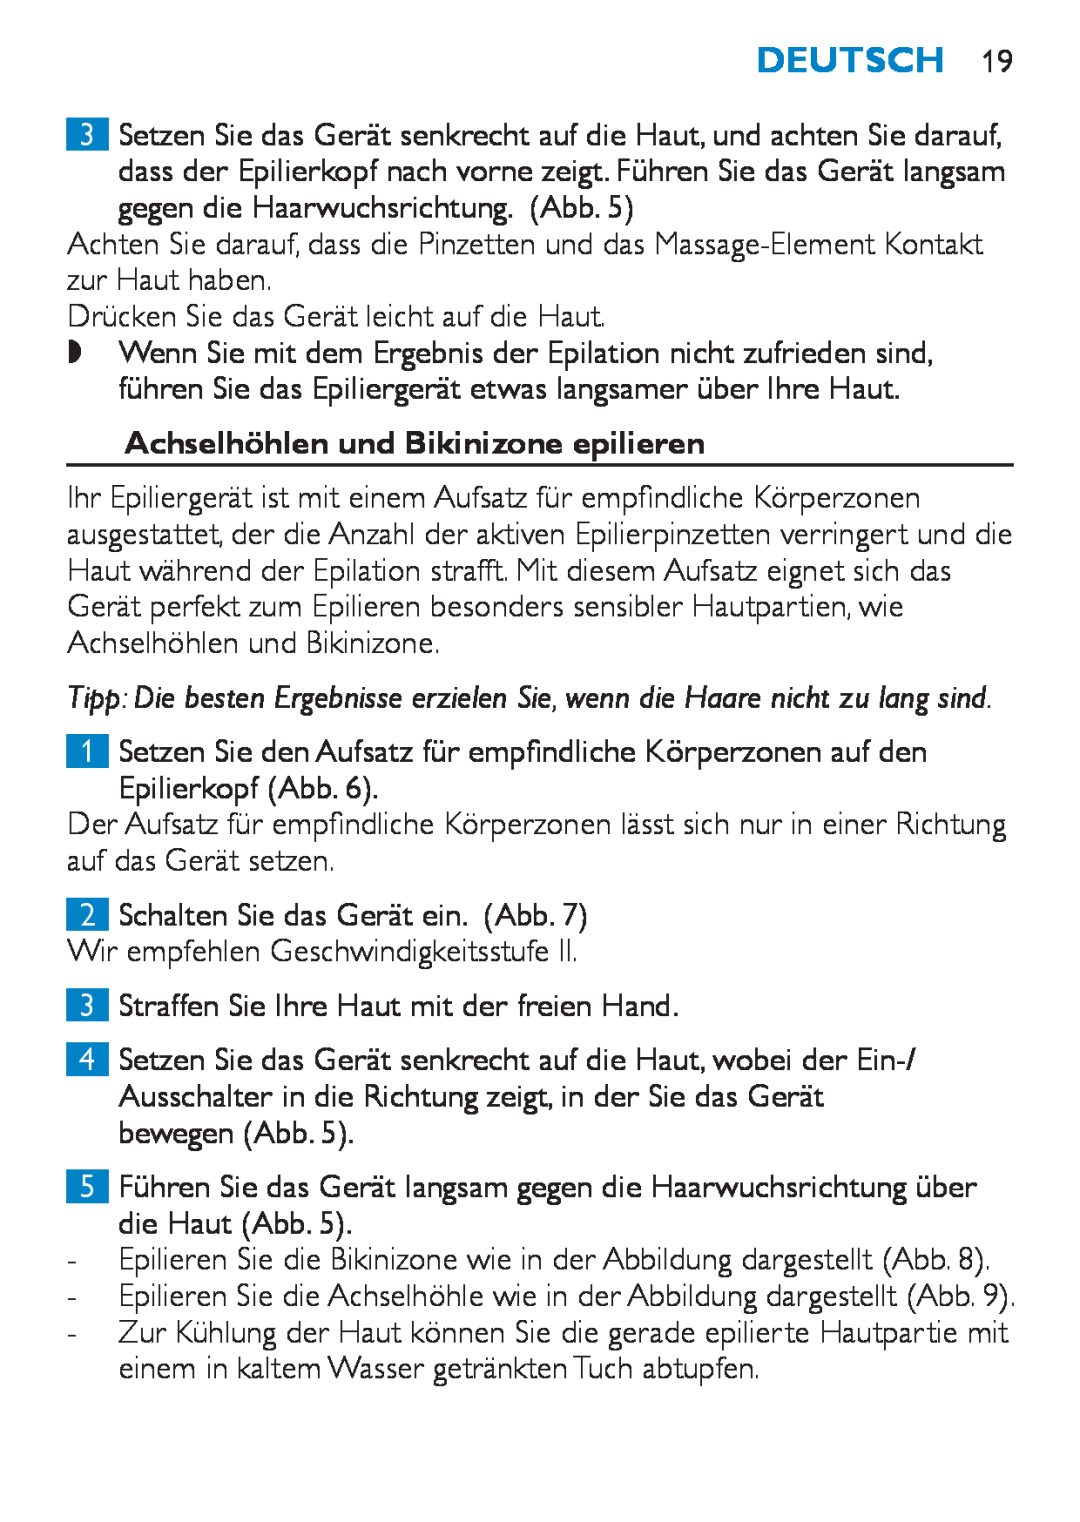 Philips HP6490 manual Achselhöhlen und Bikinizone epilieren, Deutsch, 3 4 5 